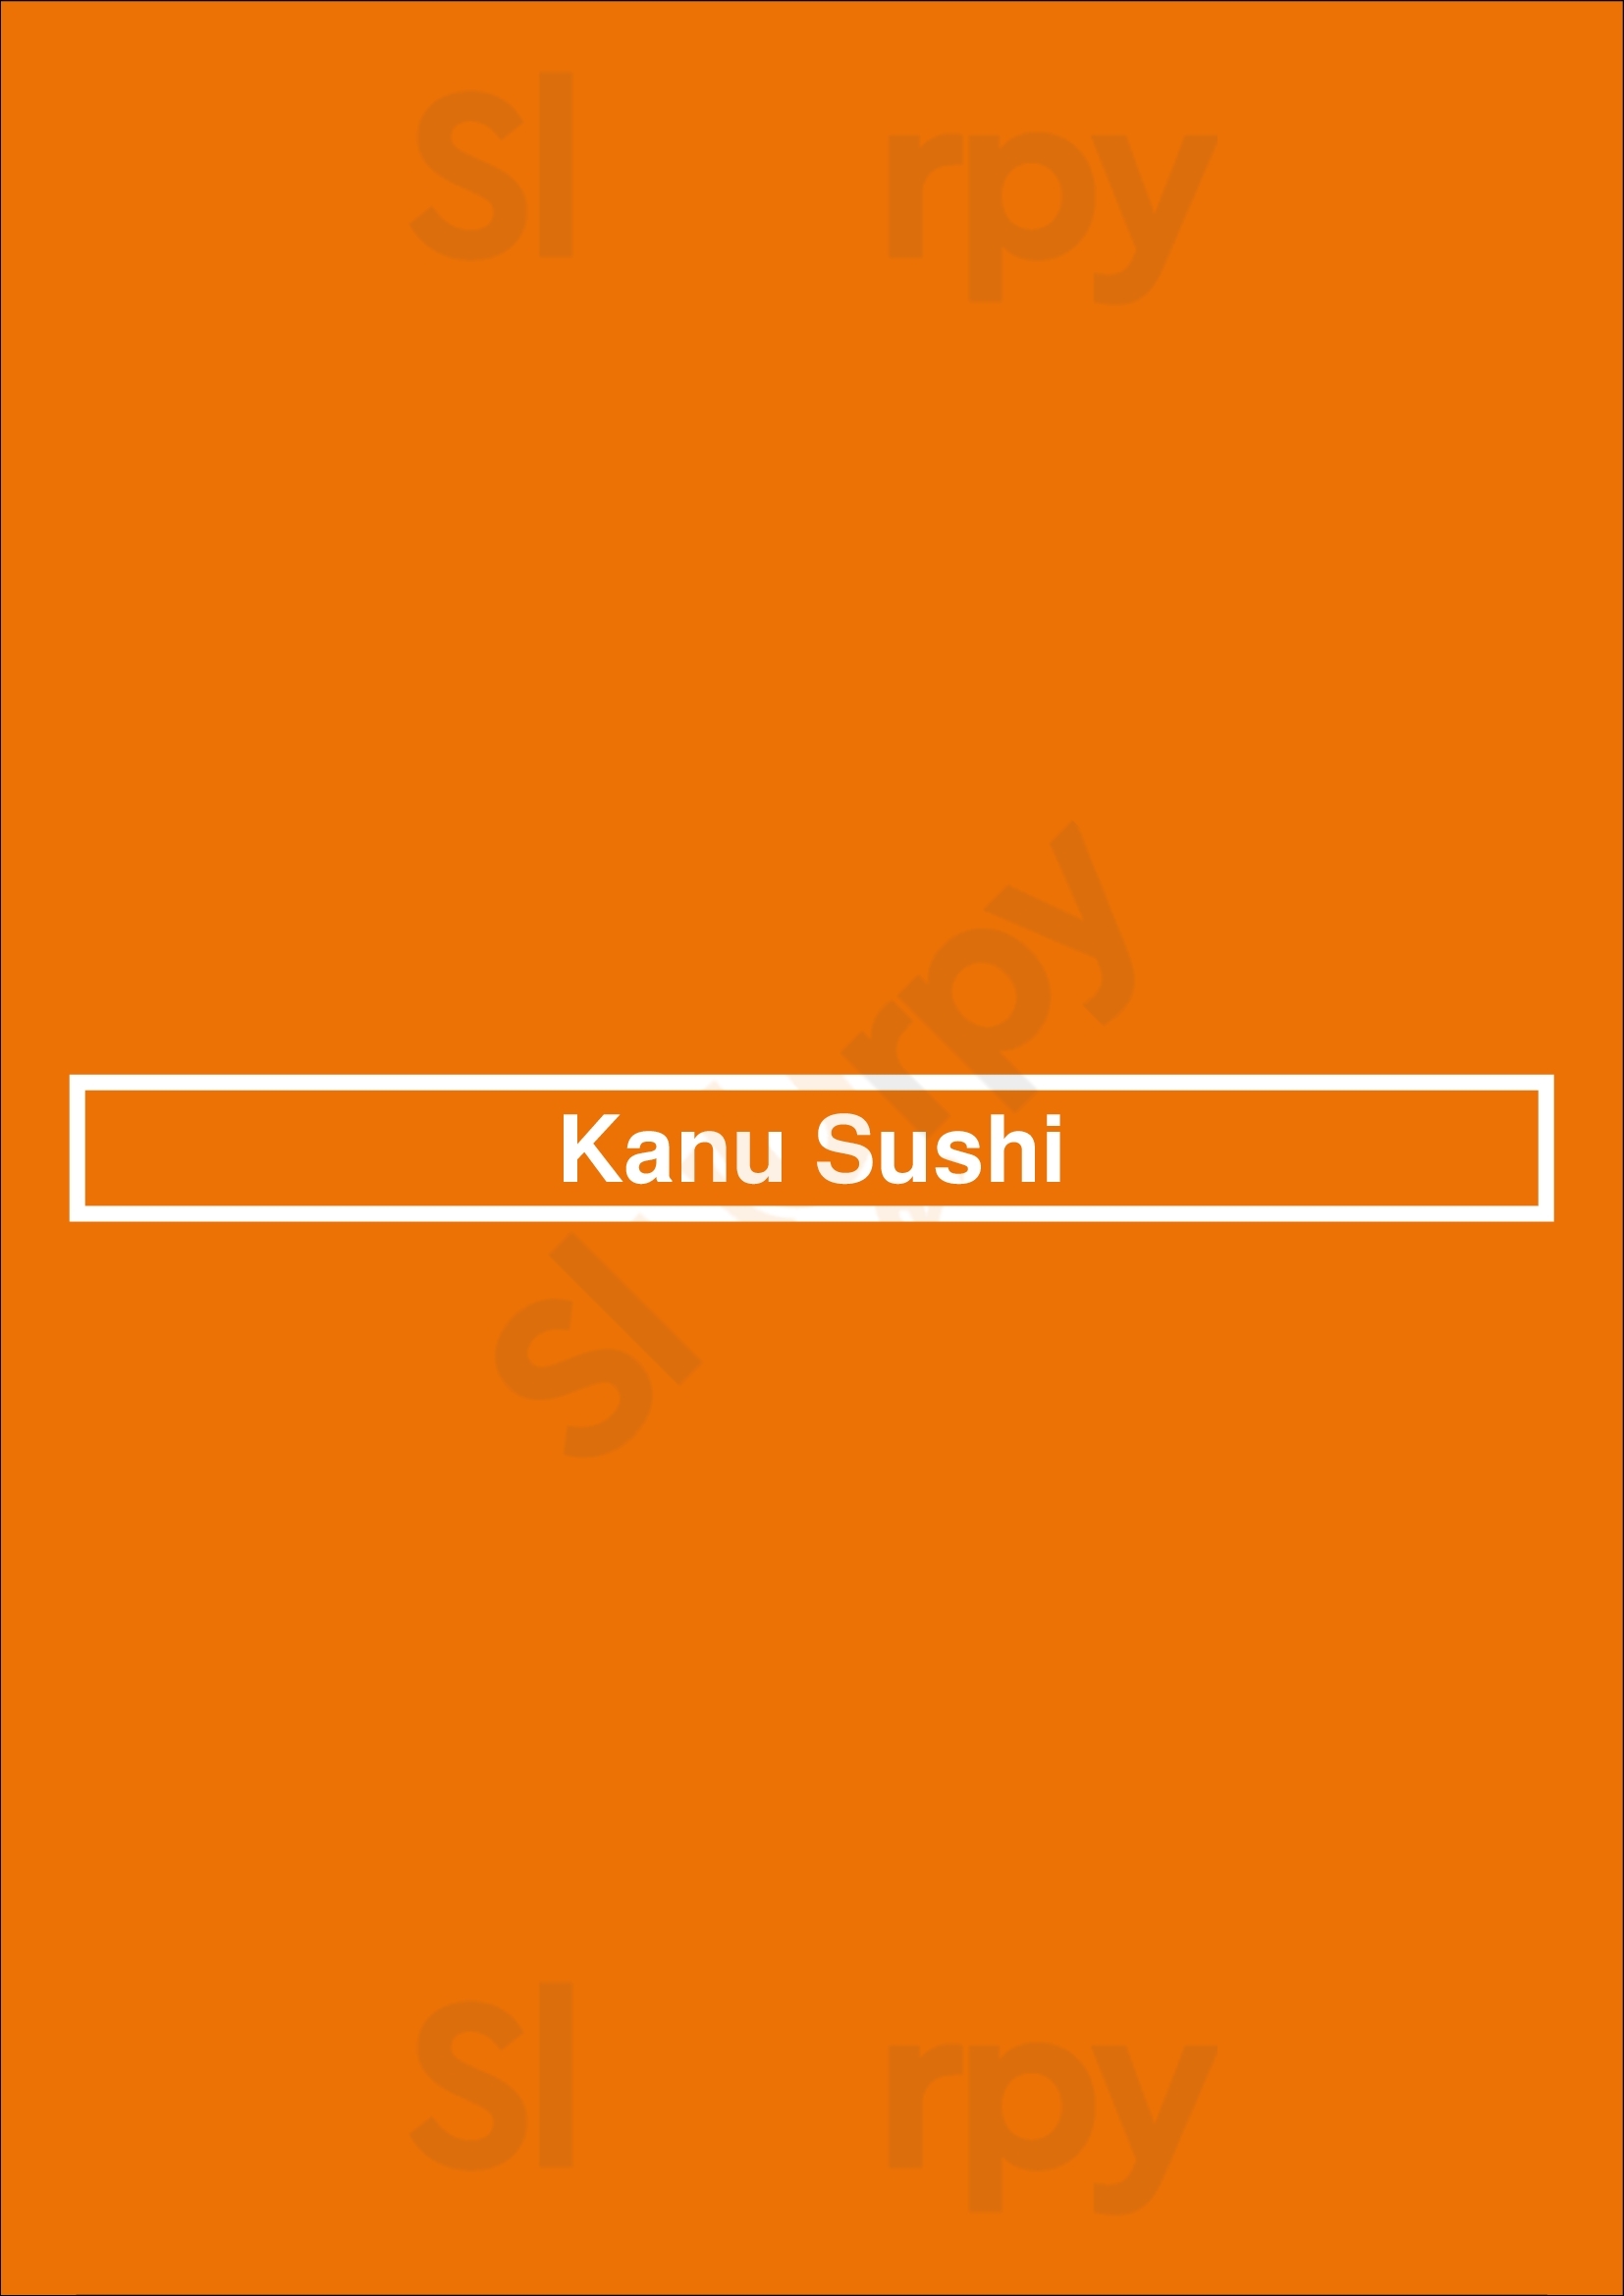 Kanu Sushi Buenos Aires Menu - 1